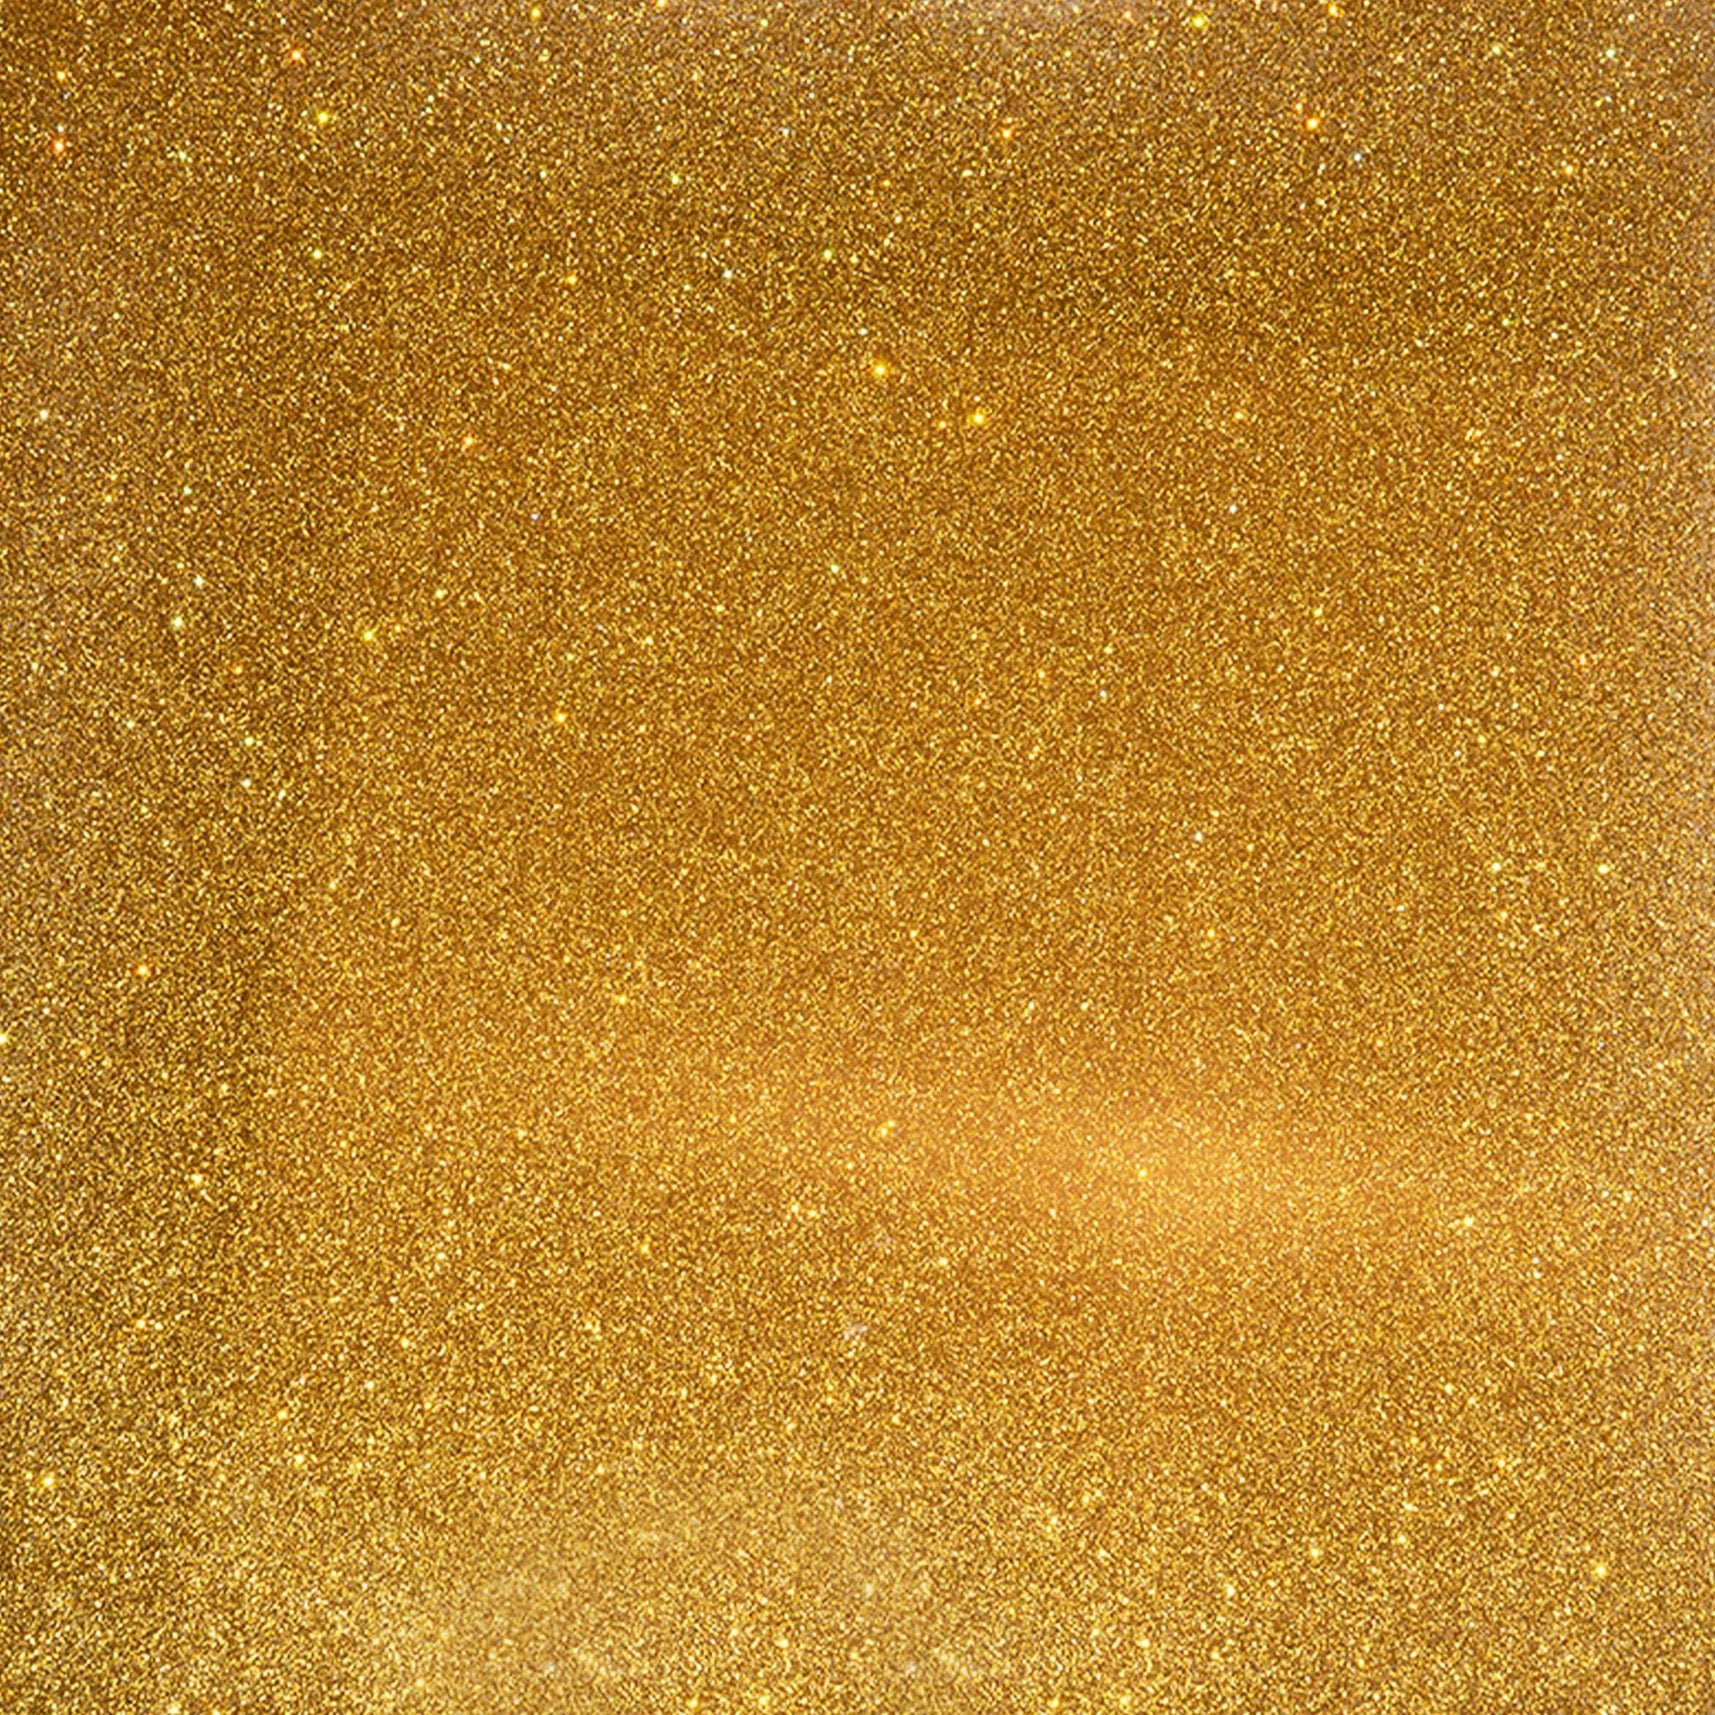 XPS gold epoxy color pigment.